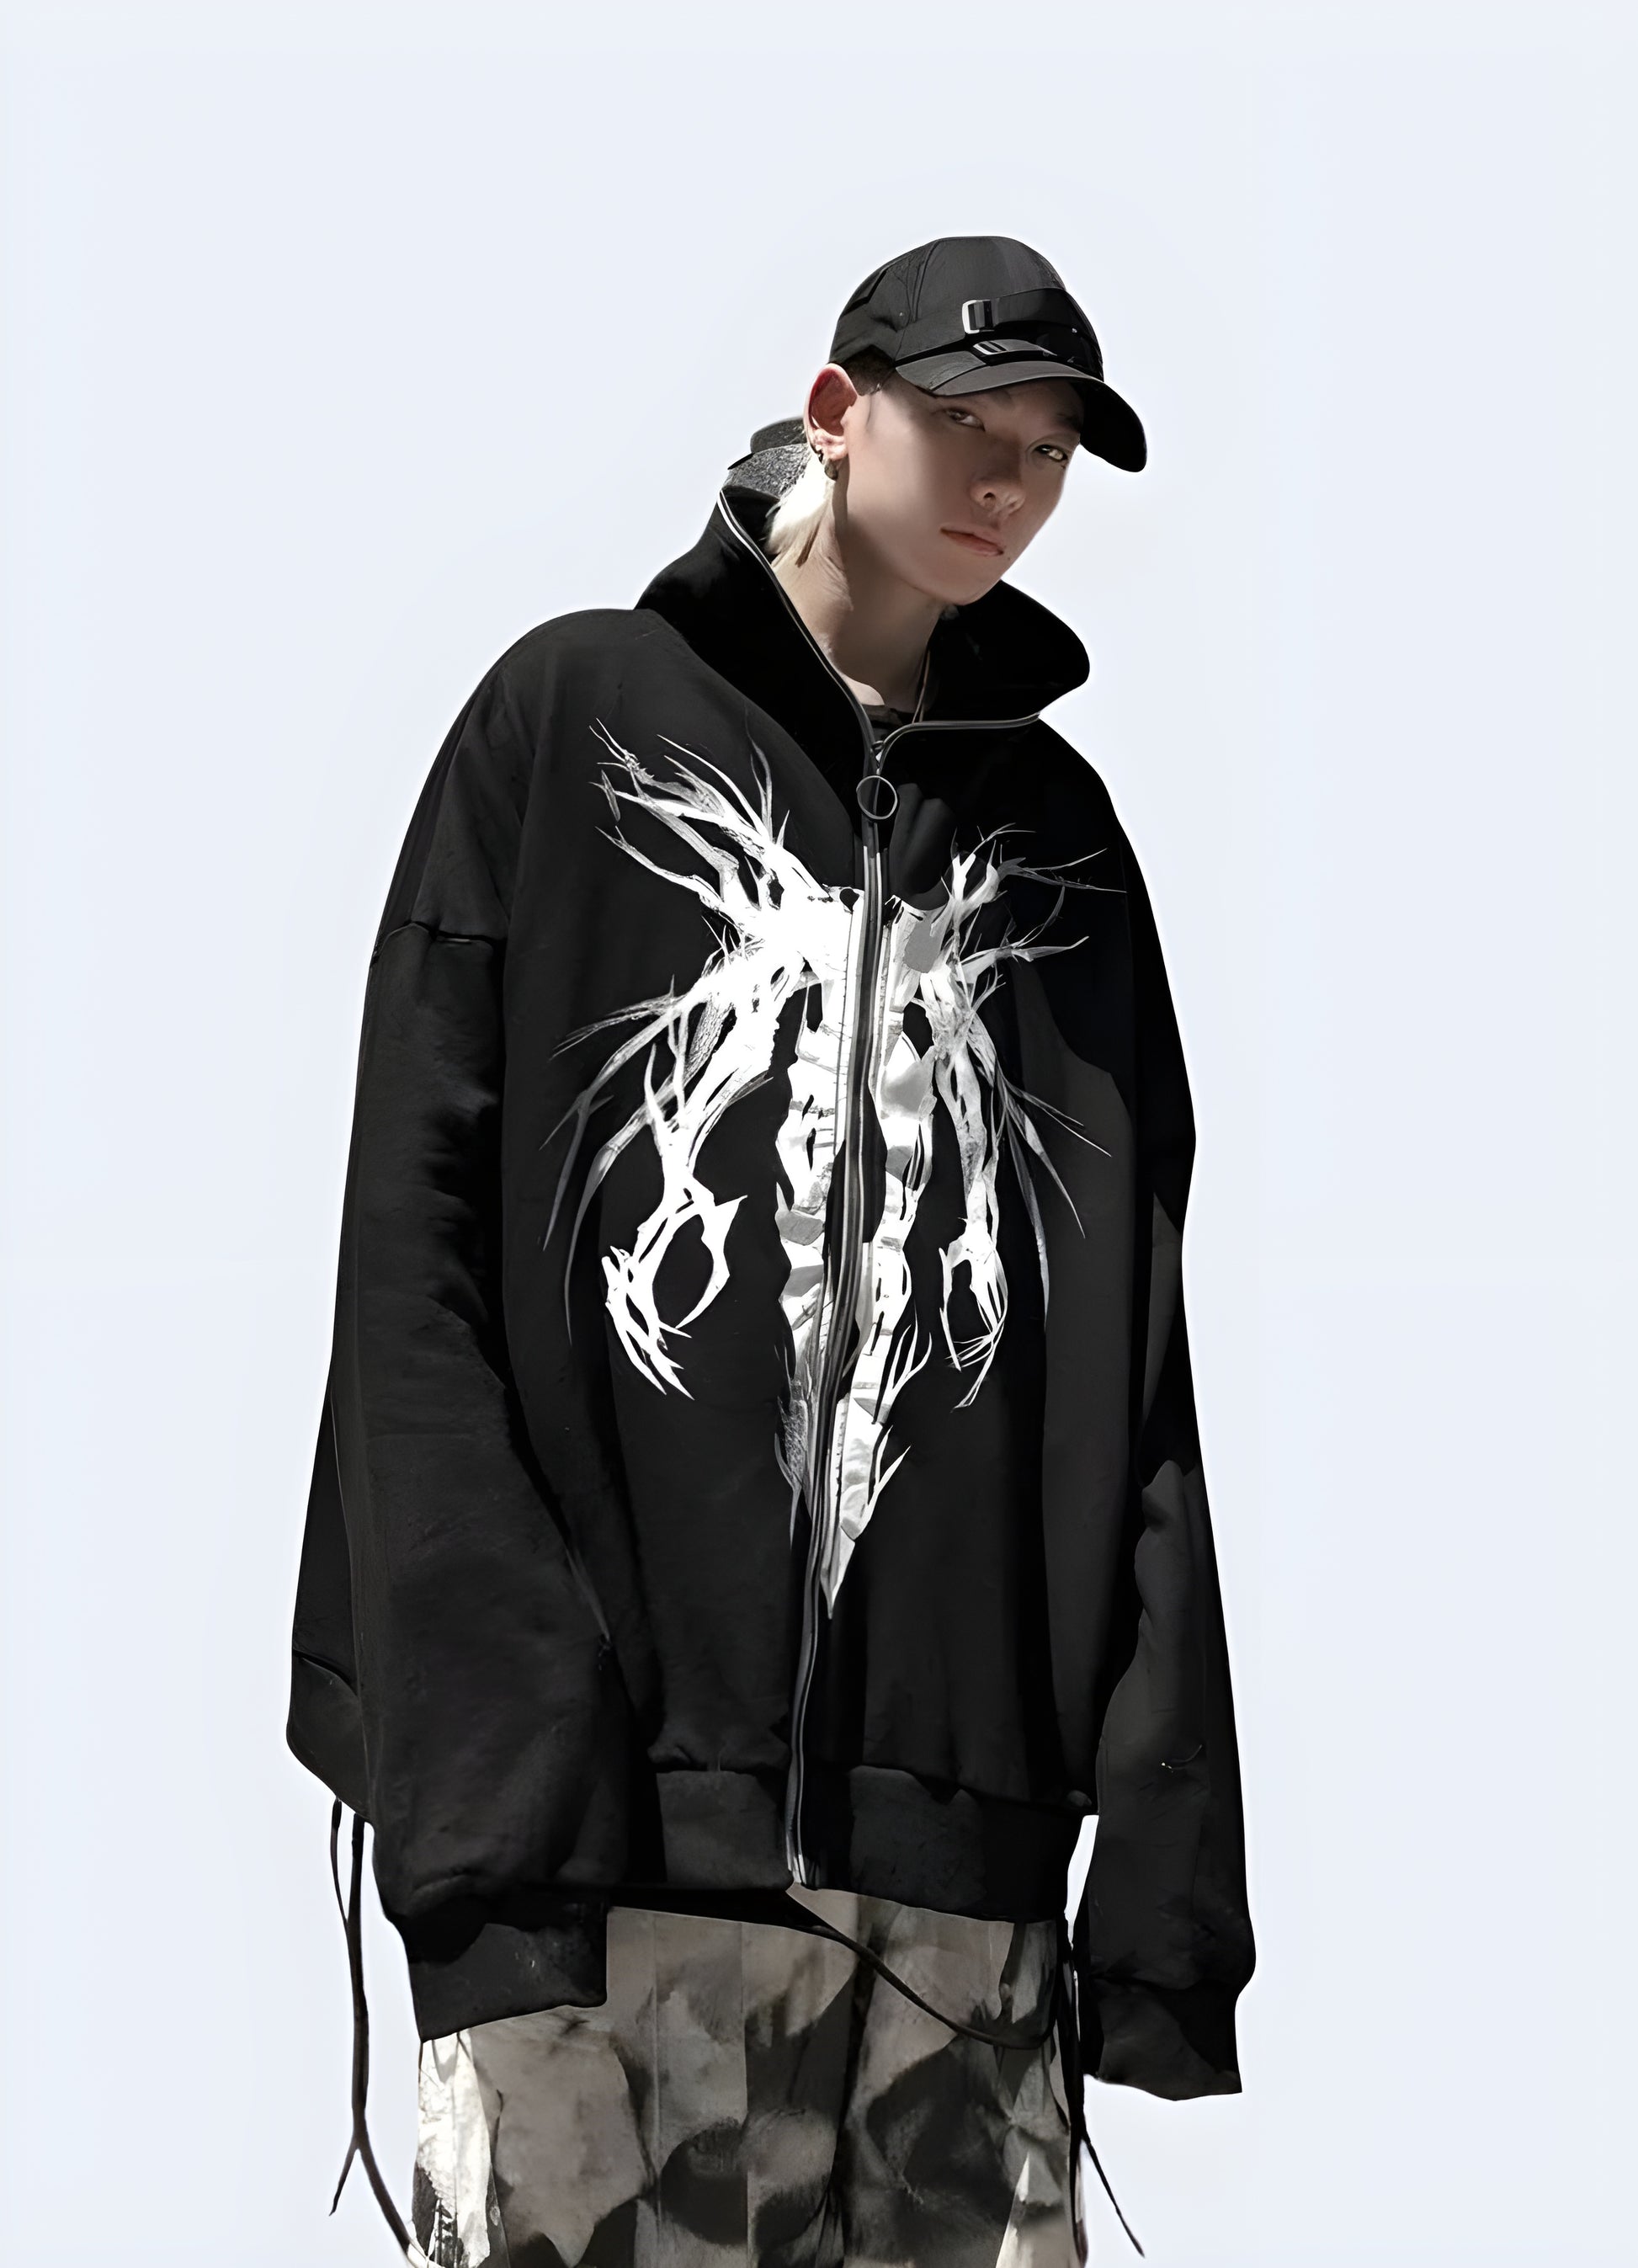 Cyberpunk, military, futuristic design grunge black hoodie.